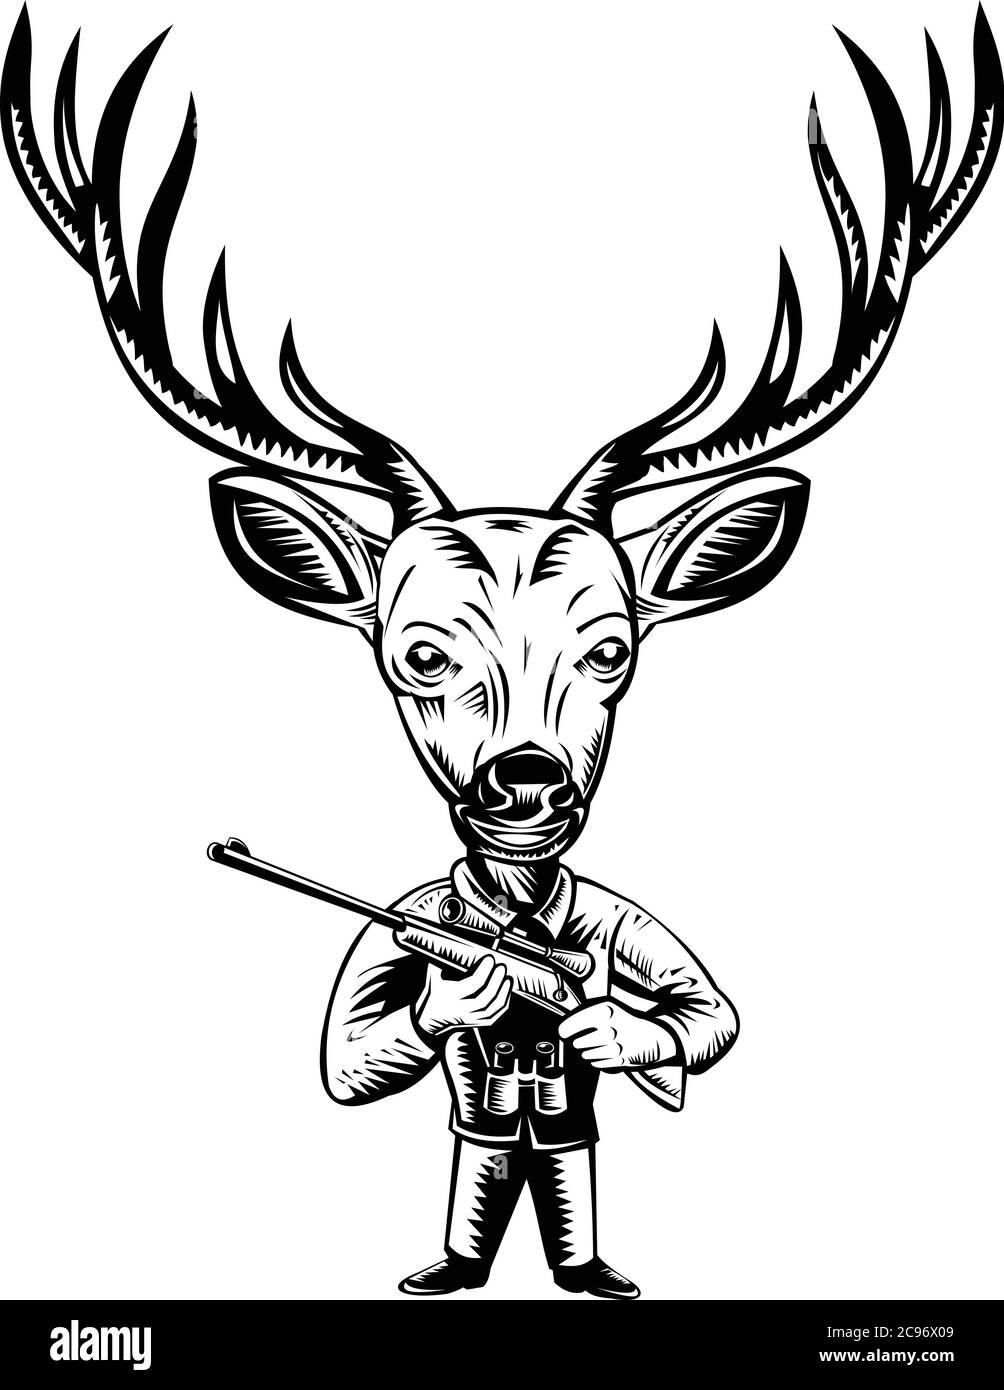 Ilustración de estilo retro en madera de un cazador de ciervo, ciervo o ciervo con rifle de caza visto desde el frente sobre fondo aislado hecho en blanco y negro. Ilustración del Vector